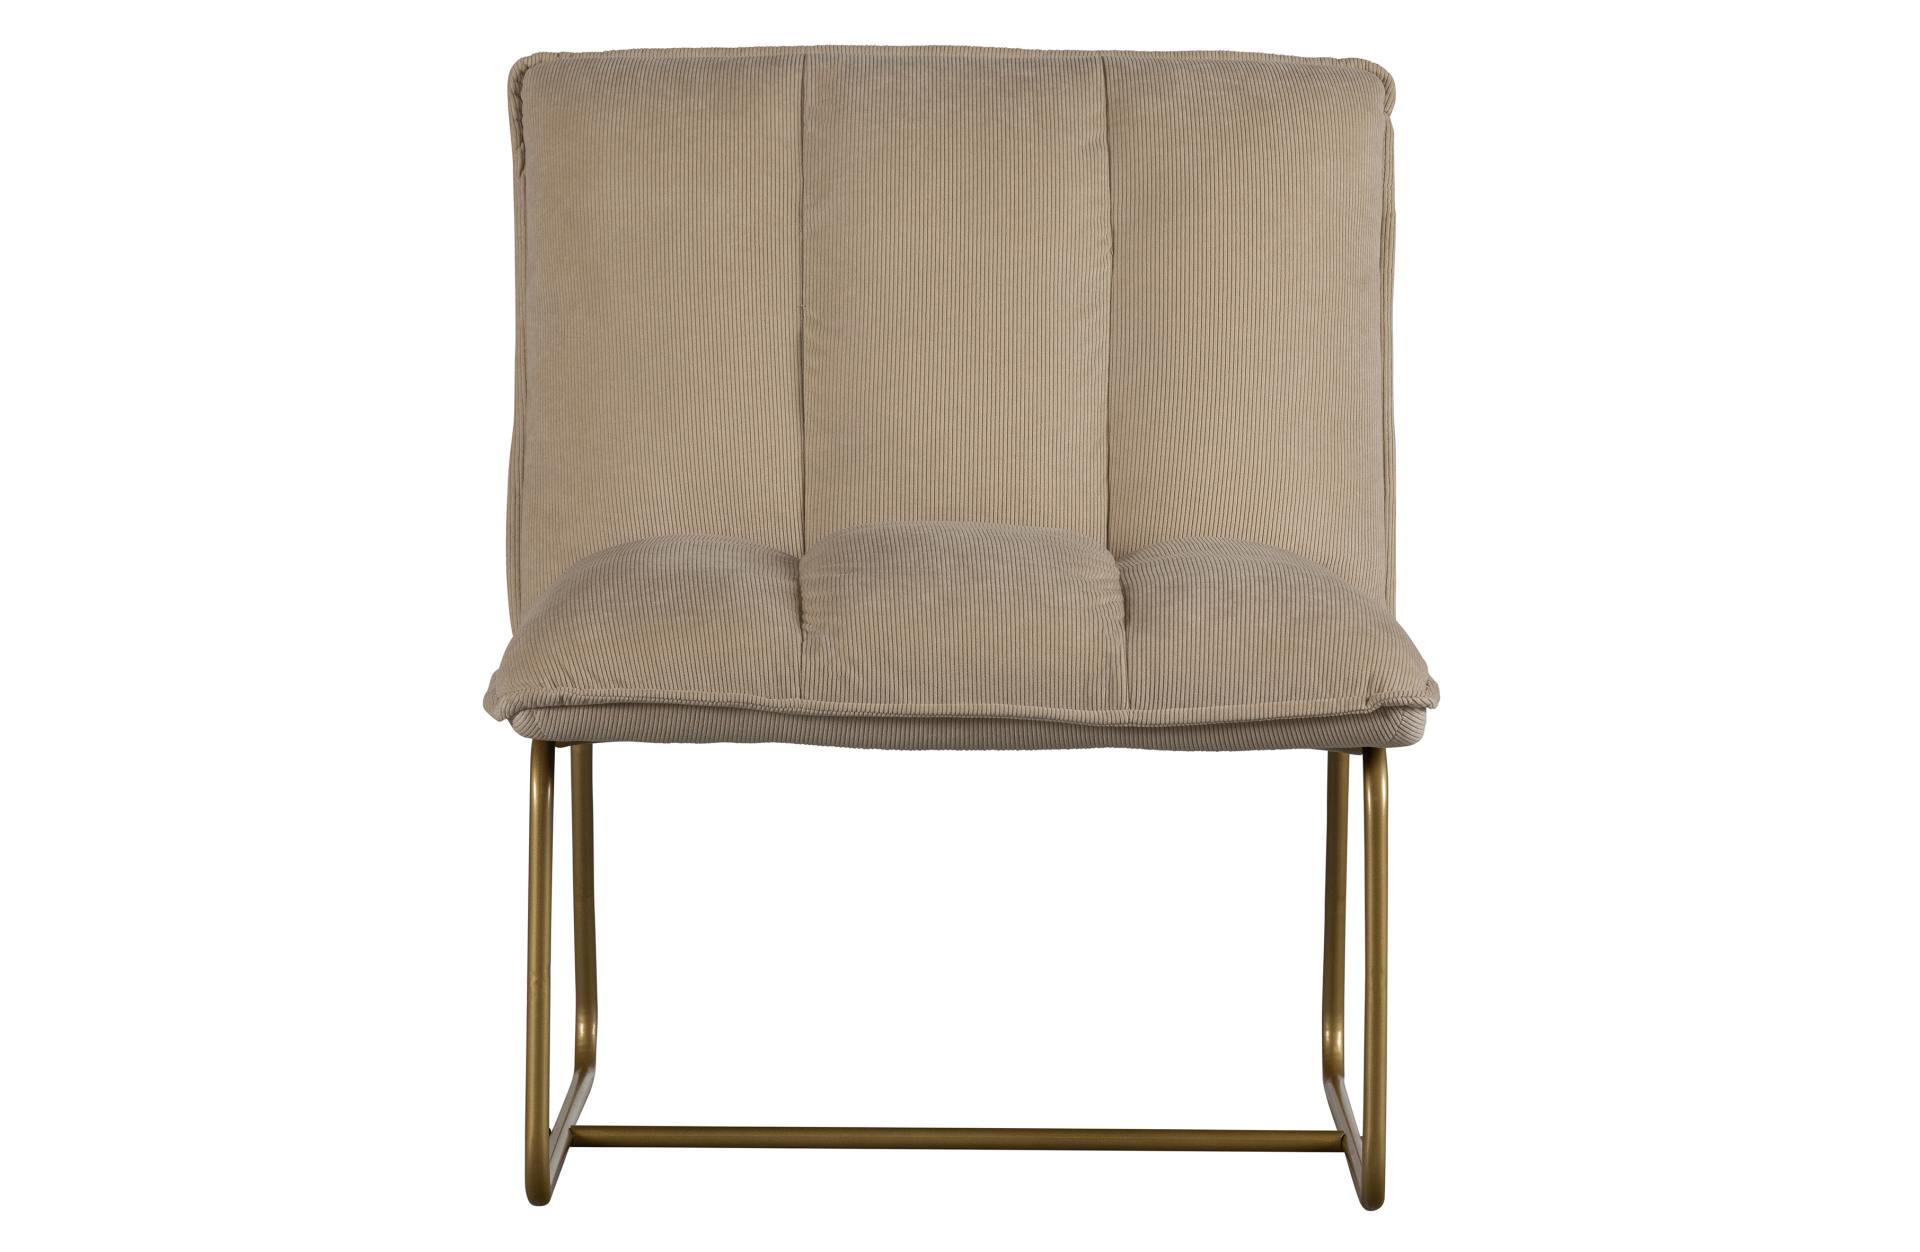 Der Sessel Fie wurde aus einem Ribcord Bezug gefertigt, welcher eine Sand Farbe hat. Das Gestell ist aus goldfarbenem Metall gefertigt, was dem Stuhl ein luxuriöses Aussehen verleiht.